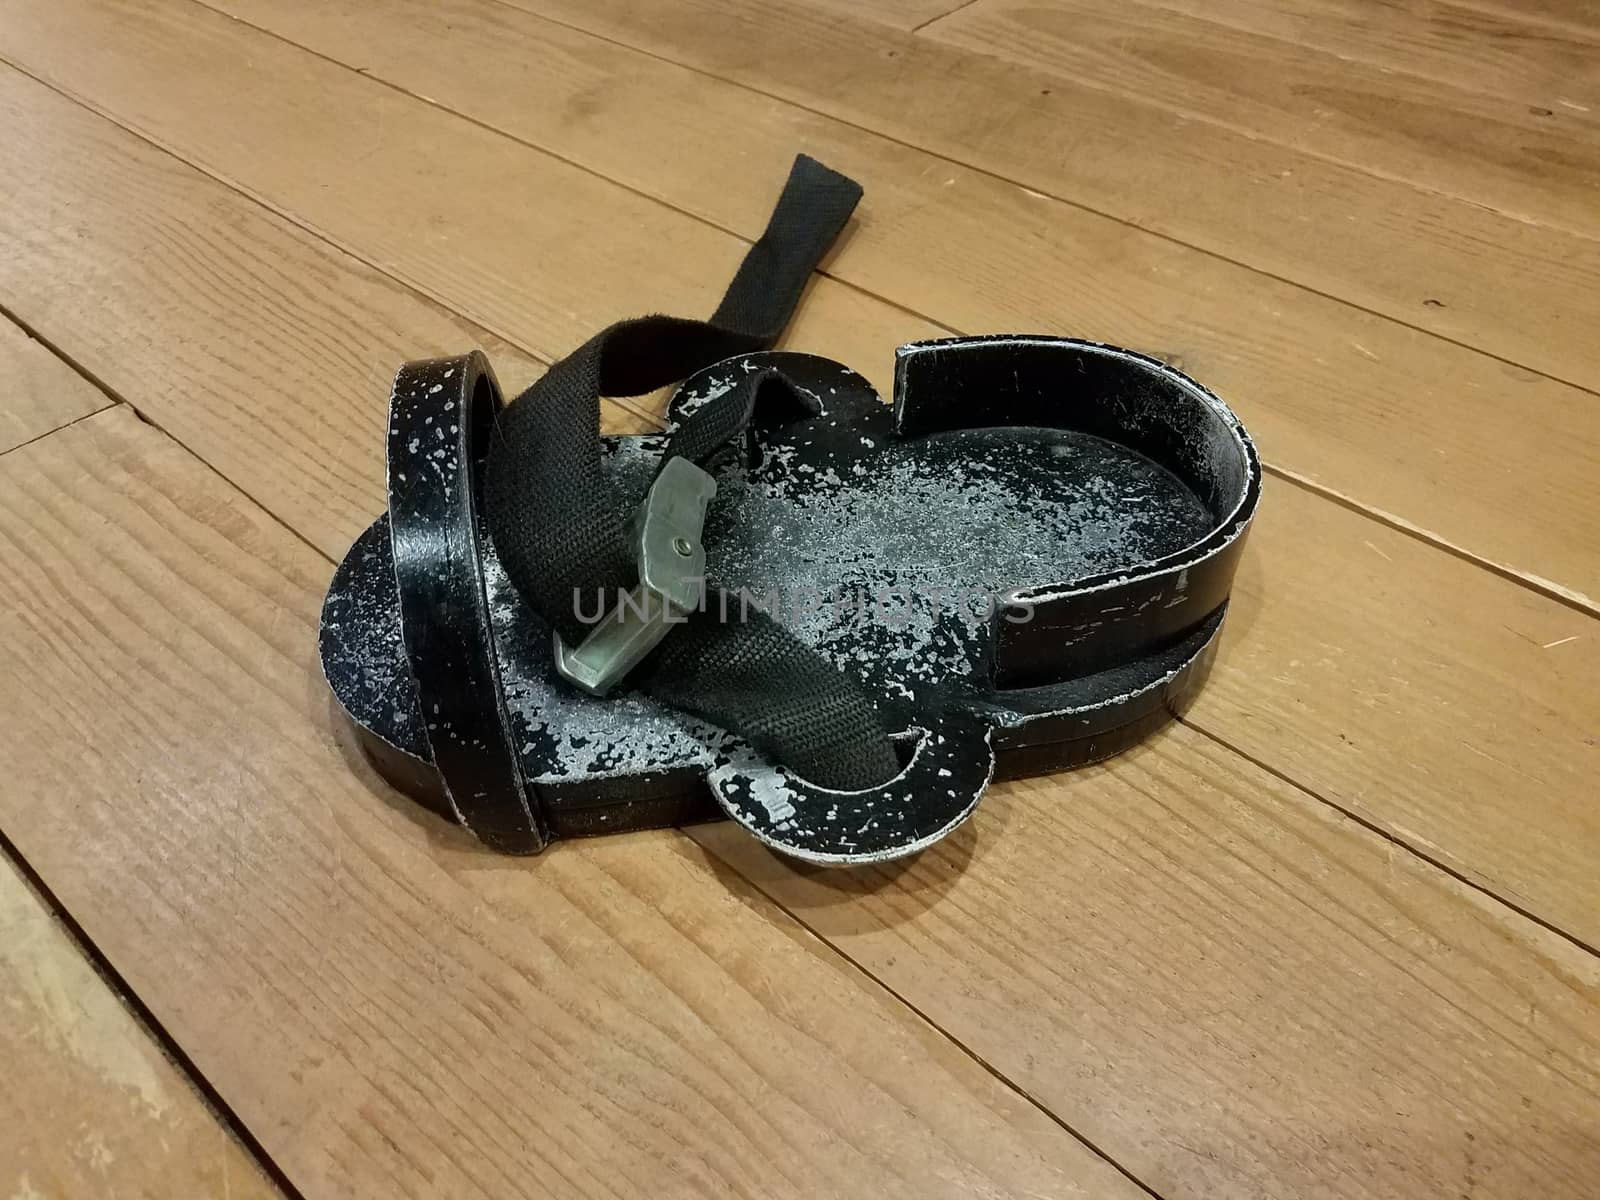 black metal weighted shoe or sandal on brown wood floor